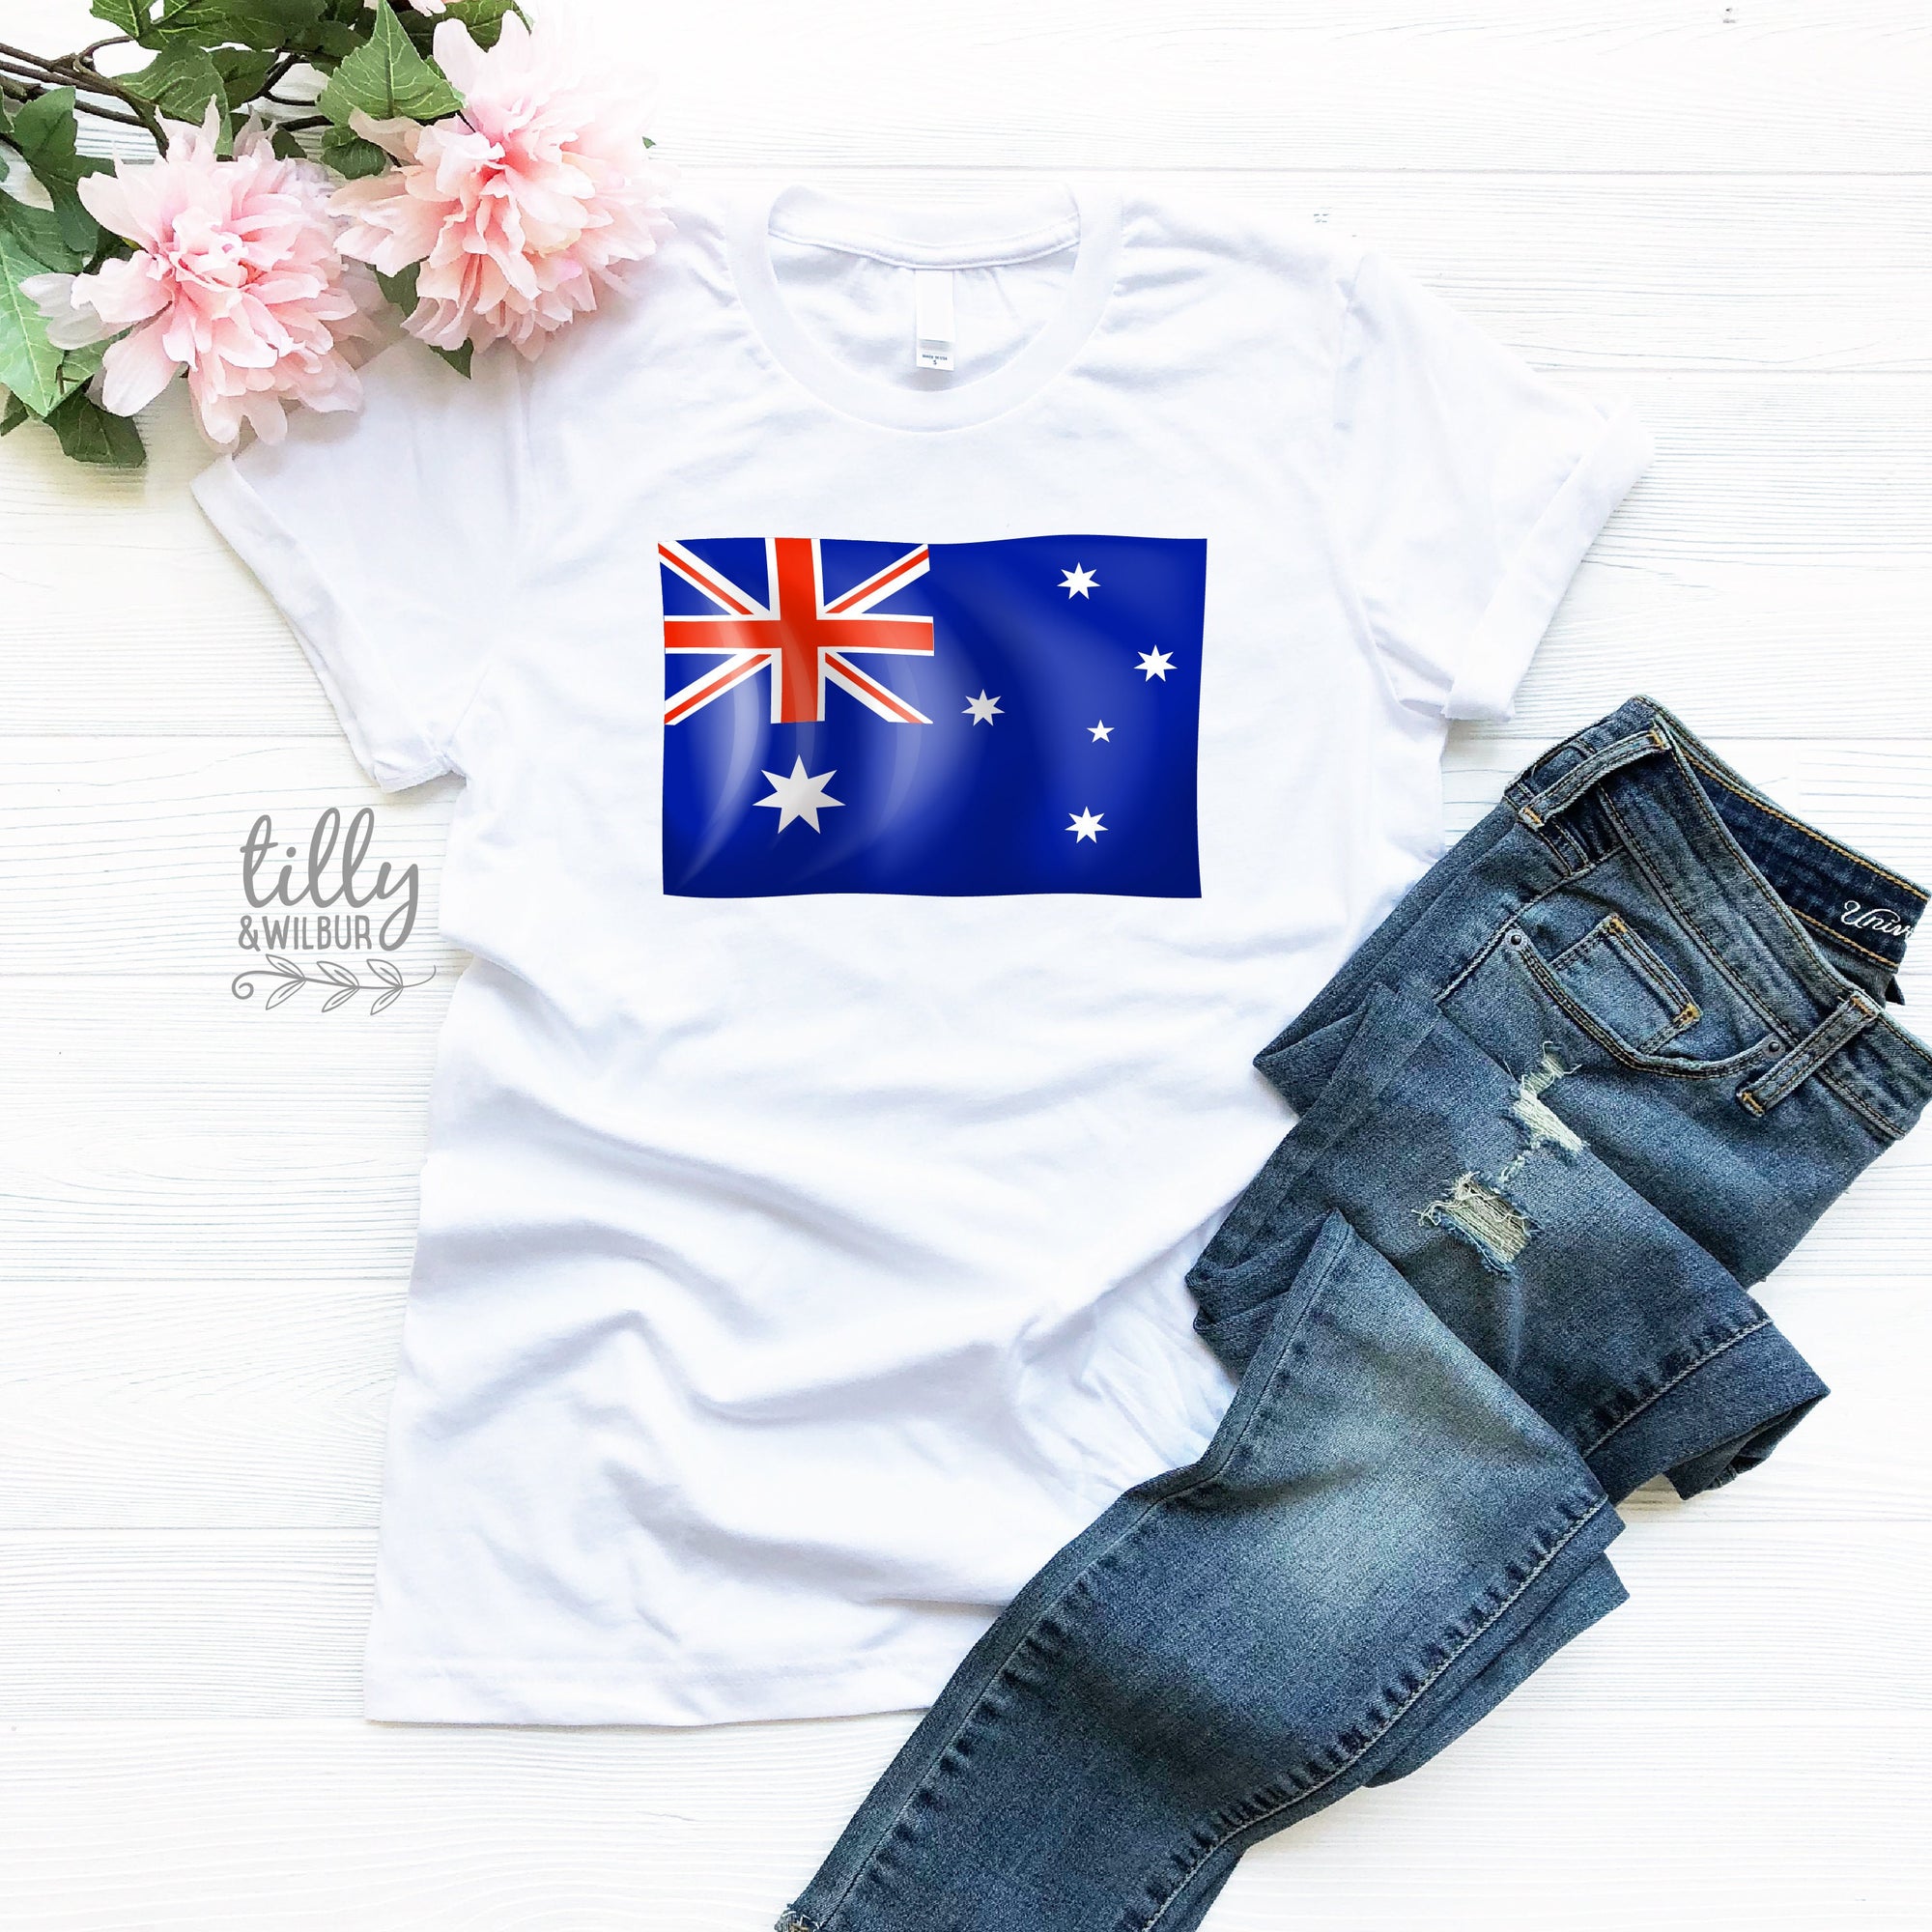 Australia Day Women's T-Shirt, Australia Day T-Shirt, Aussie Aussie Aussie, Australia Day Tee, Ladies Australia Day Gift, Australian Flag